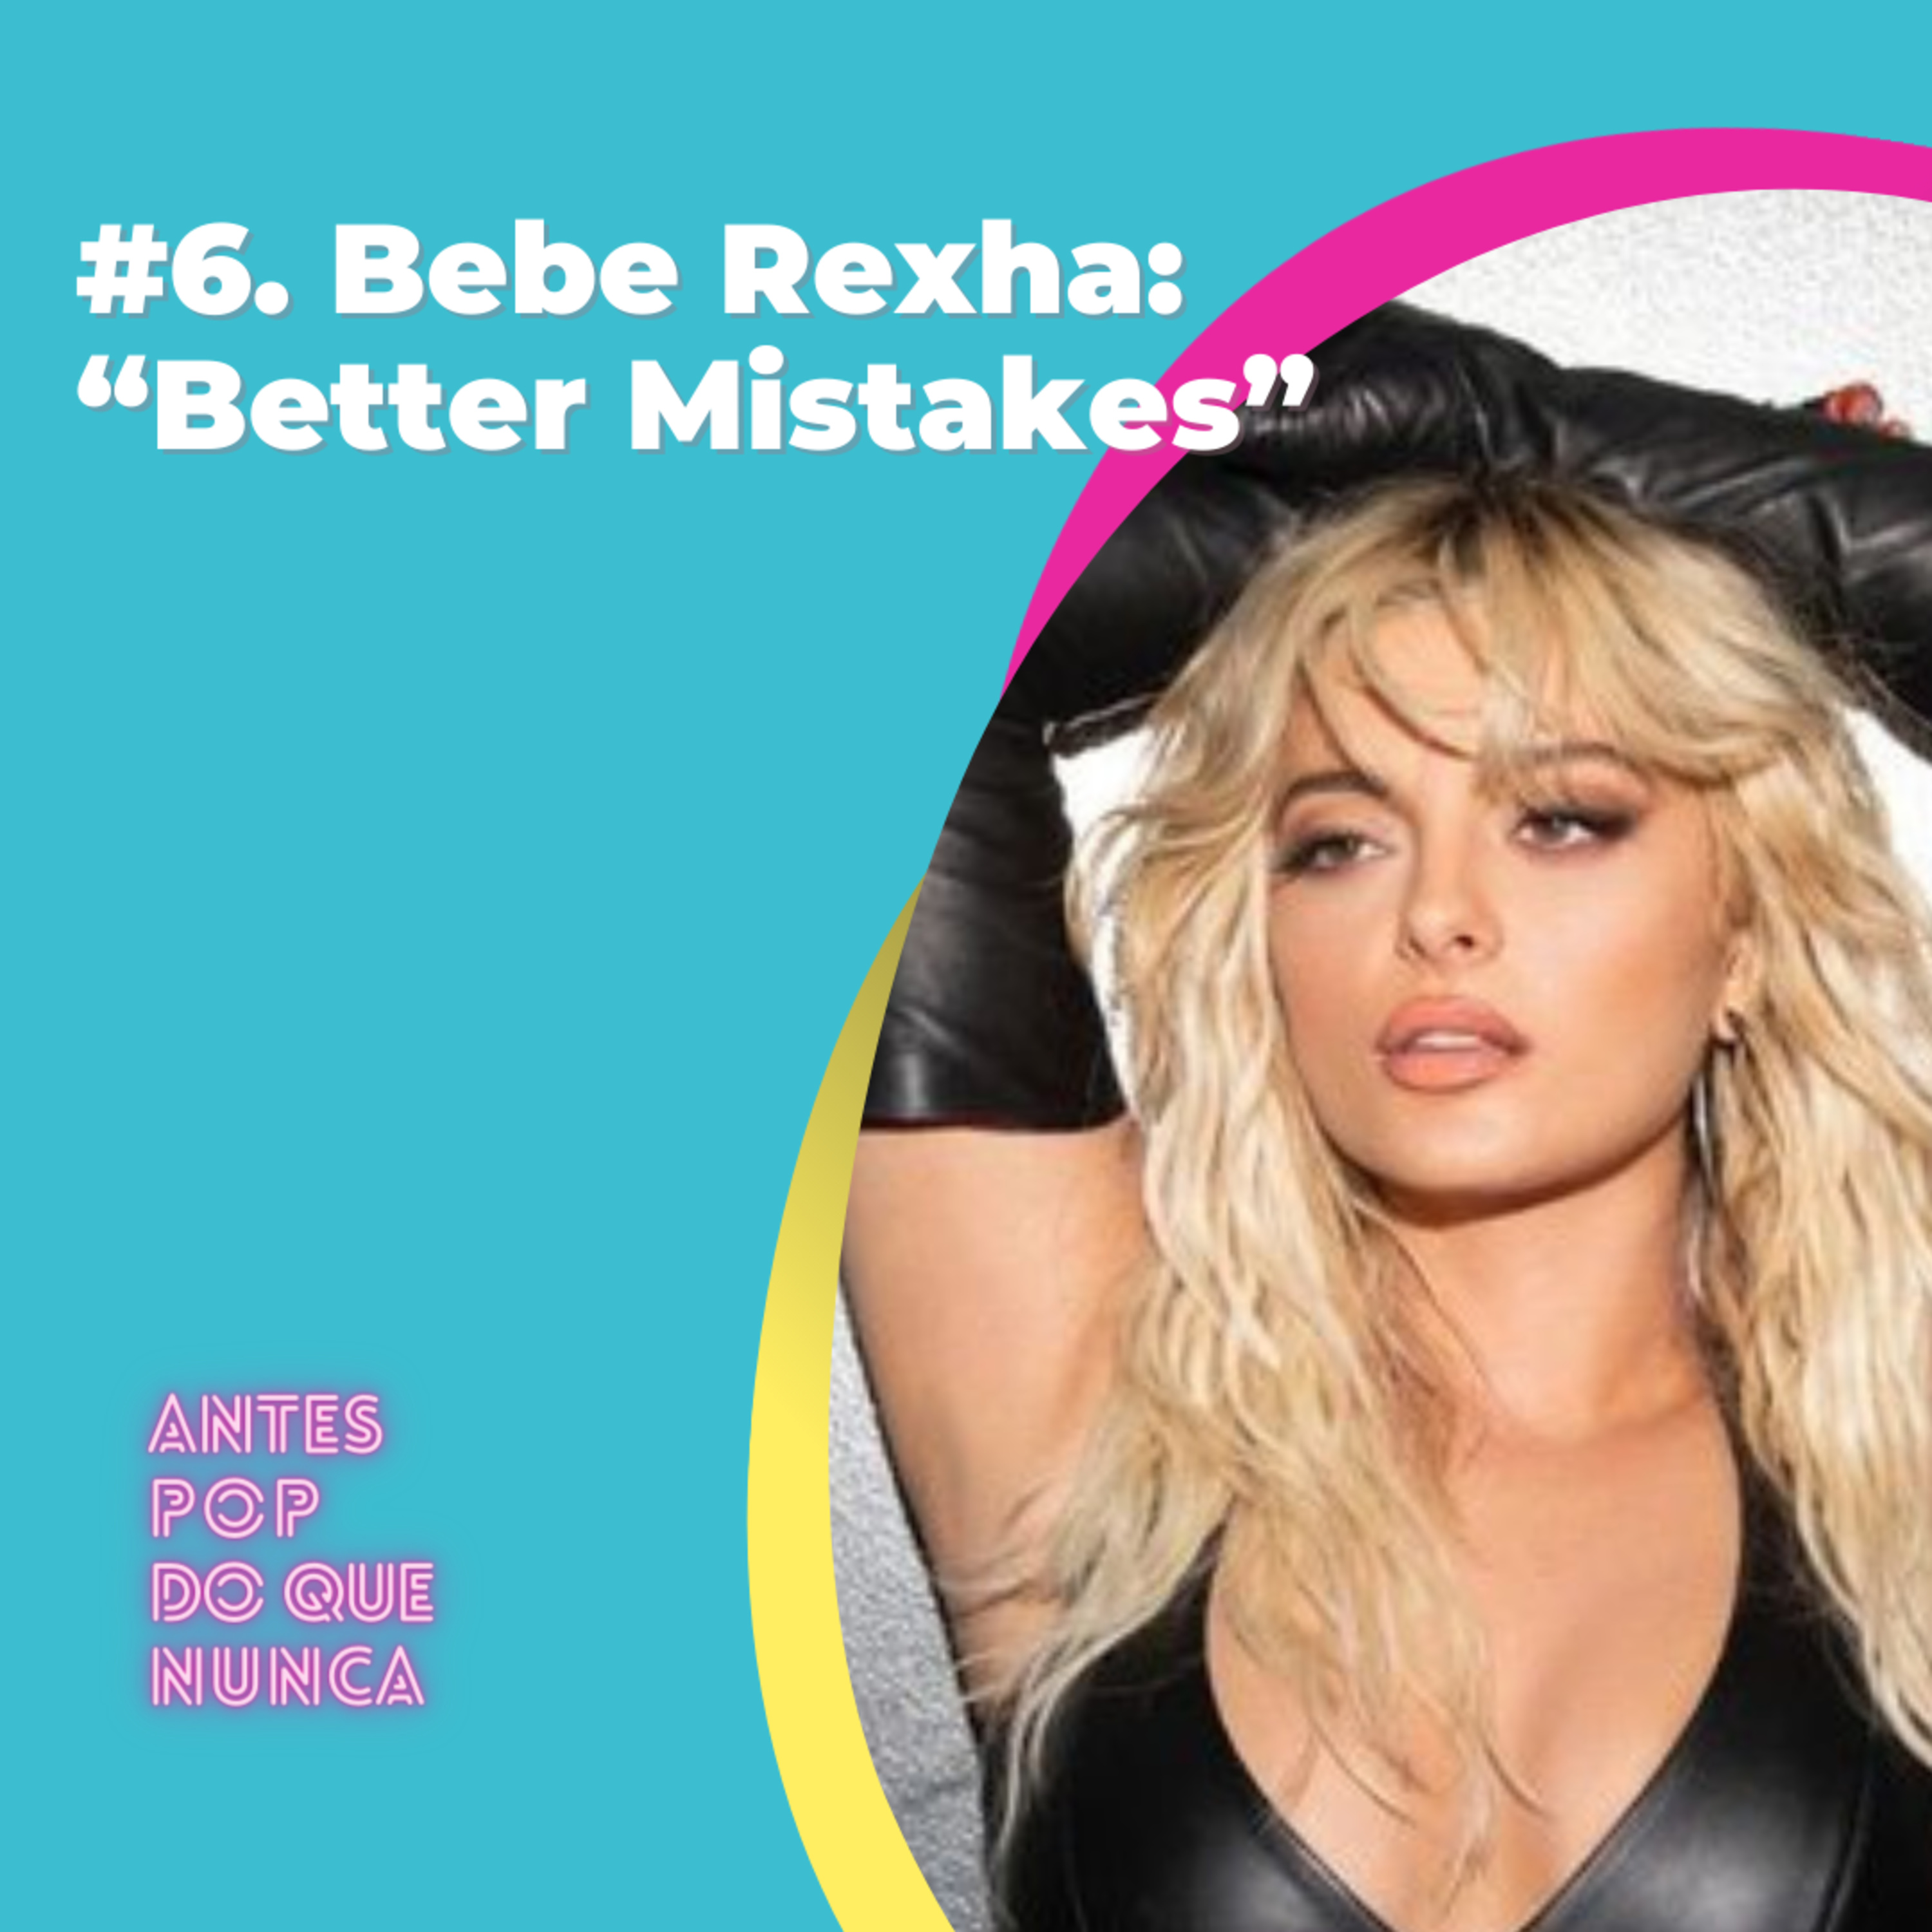 #6. Como Bebe Rexha tenta consolidar a carreira com “Better Mistakes”